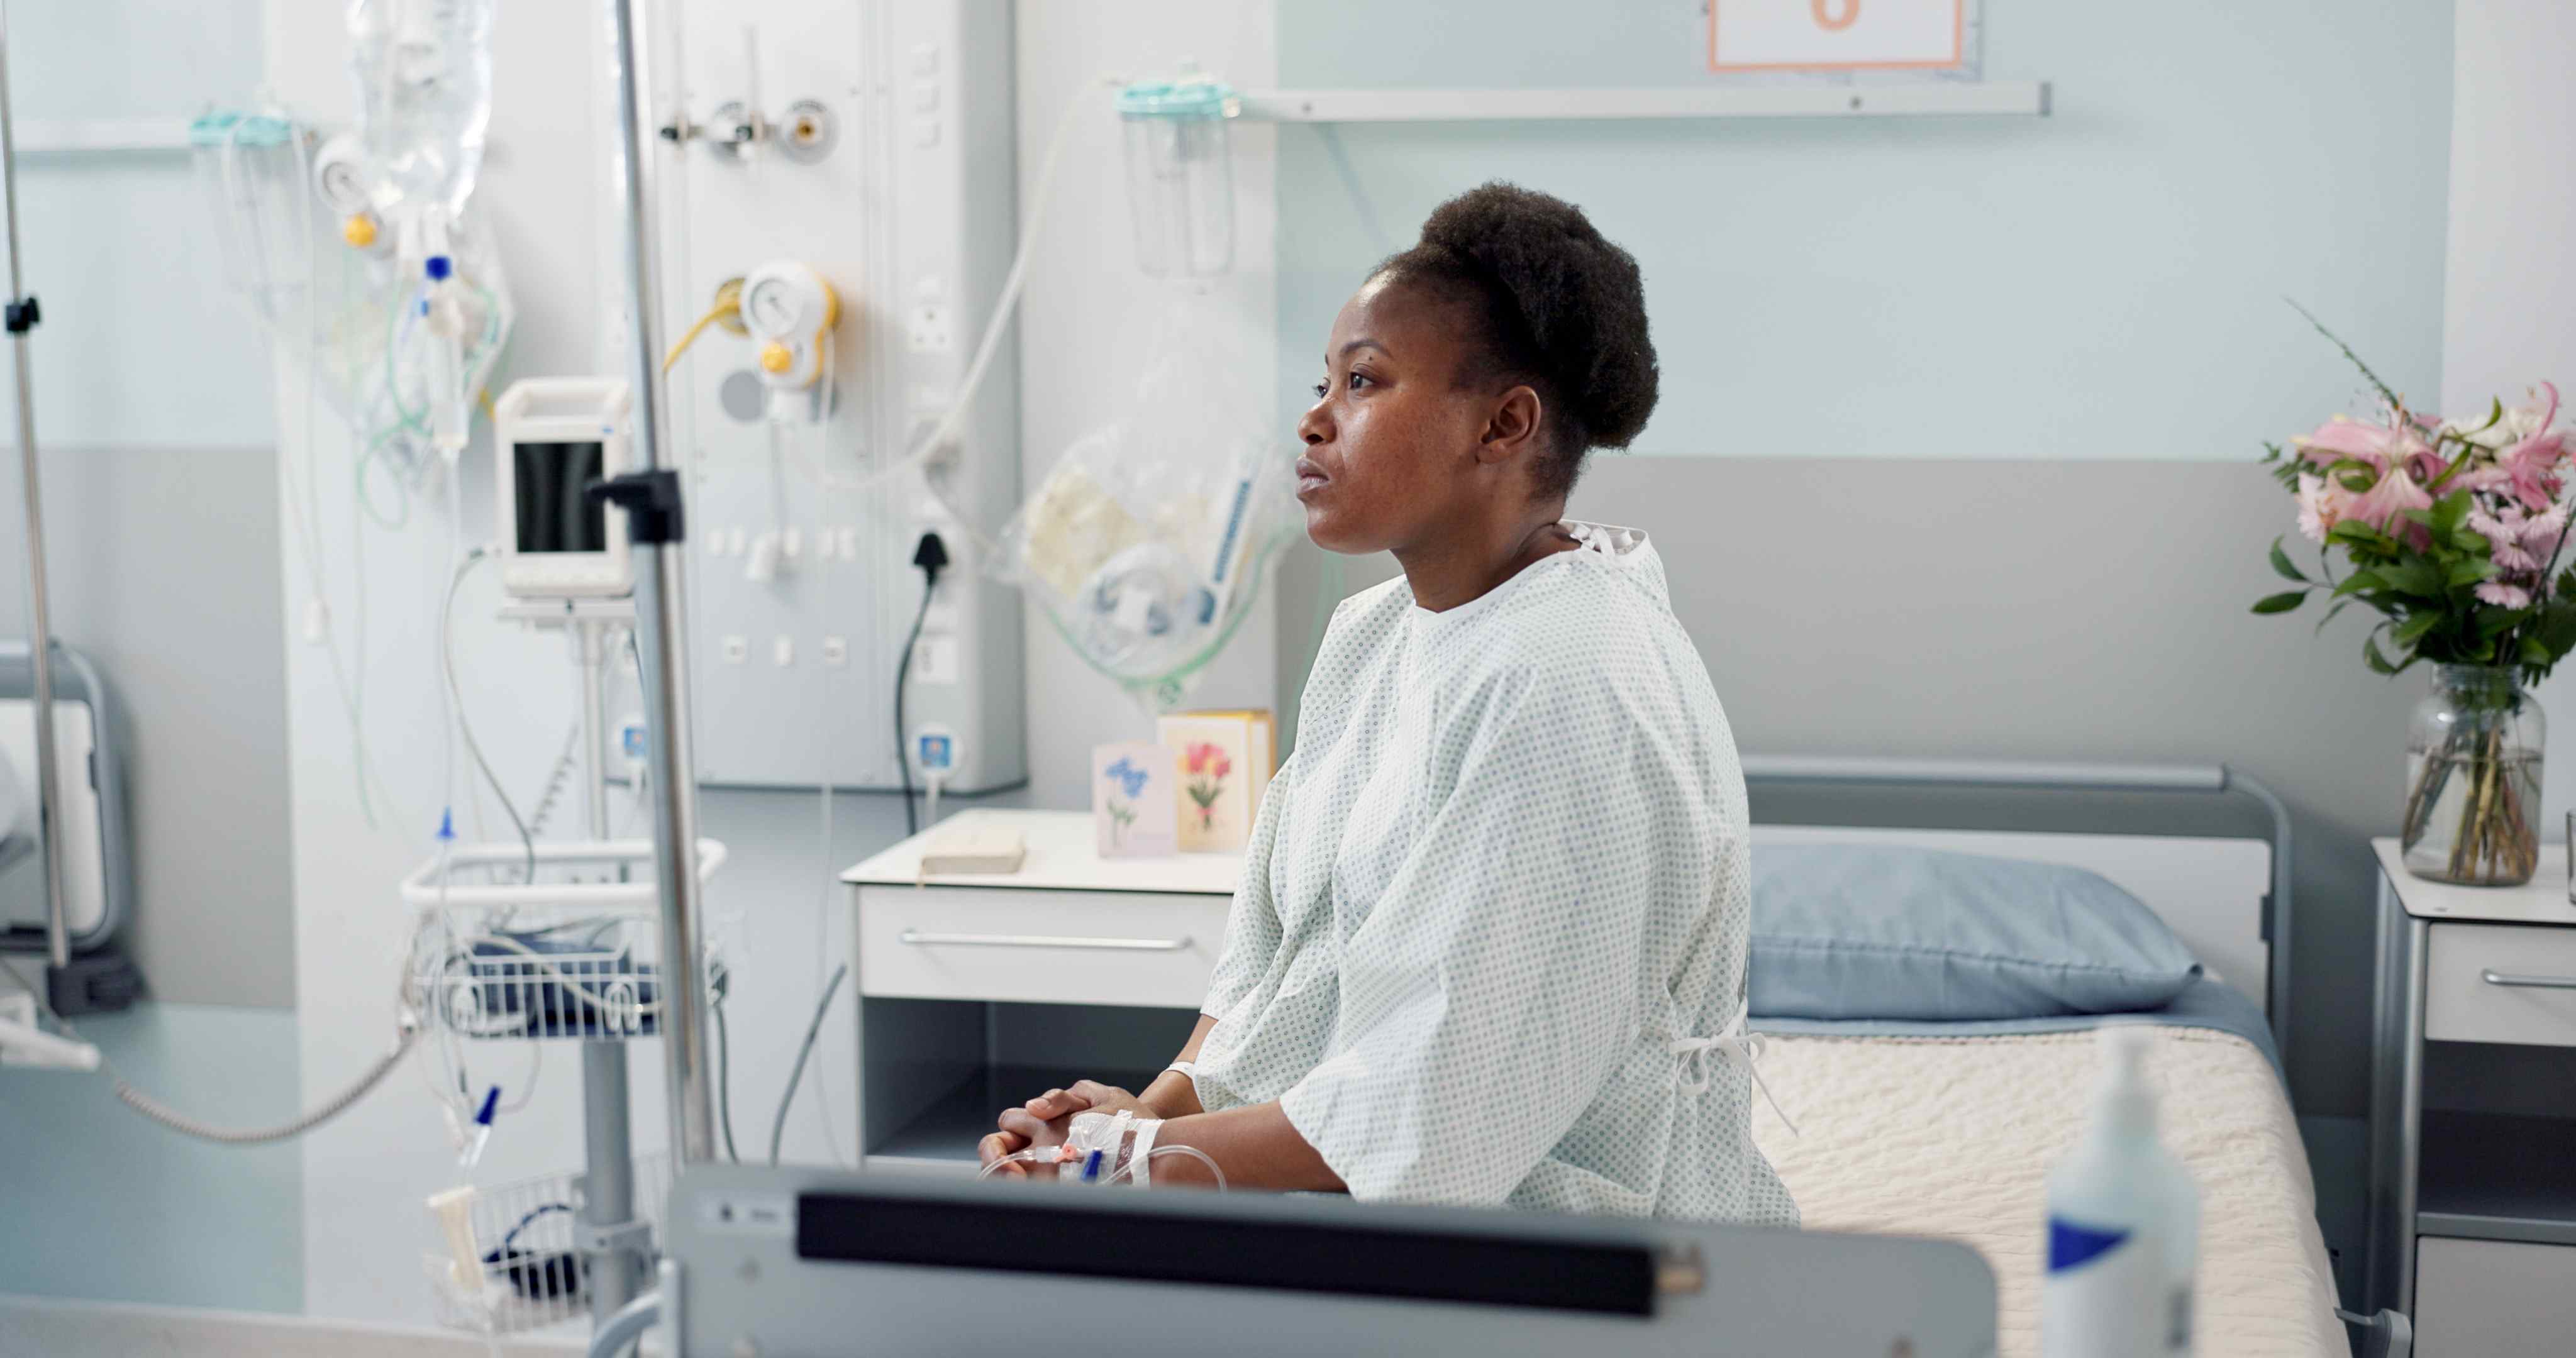 Une femme noire aux urgences a moins de chances d'être correctement prise en charge qu'un homme blanc. © N F/peopleimages.com, Adobe Stock